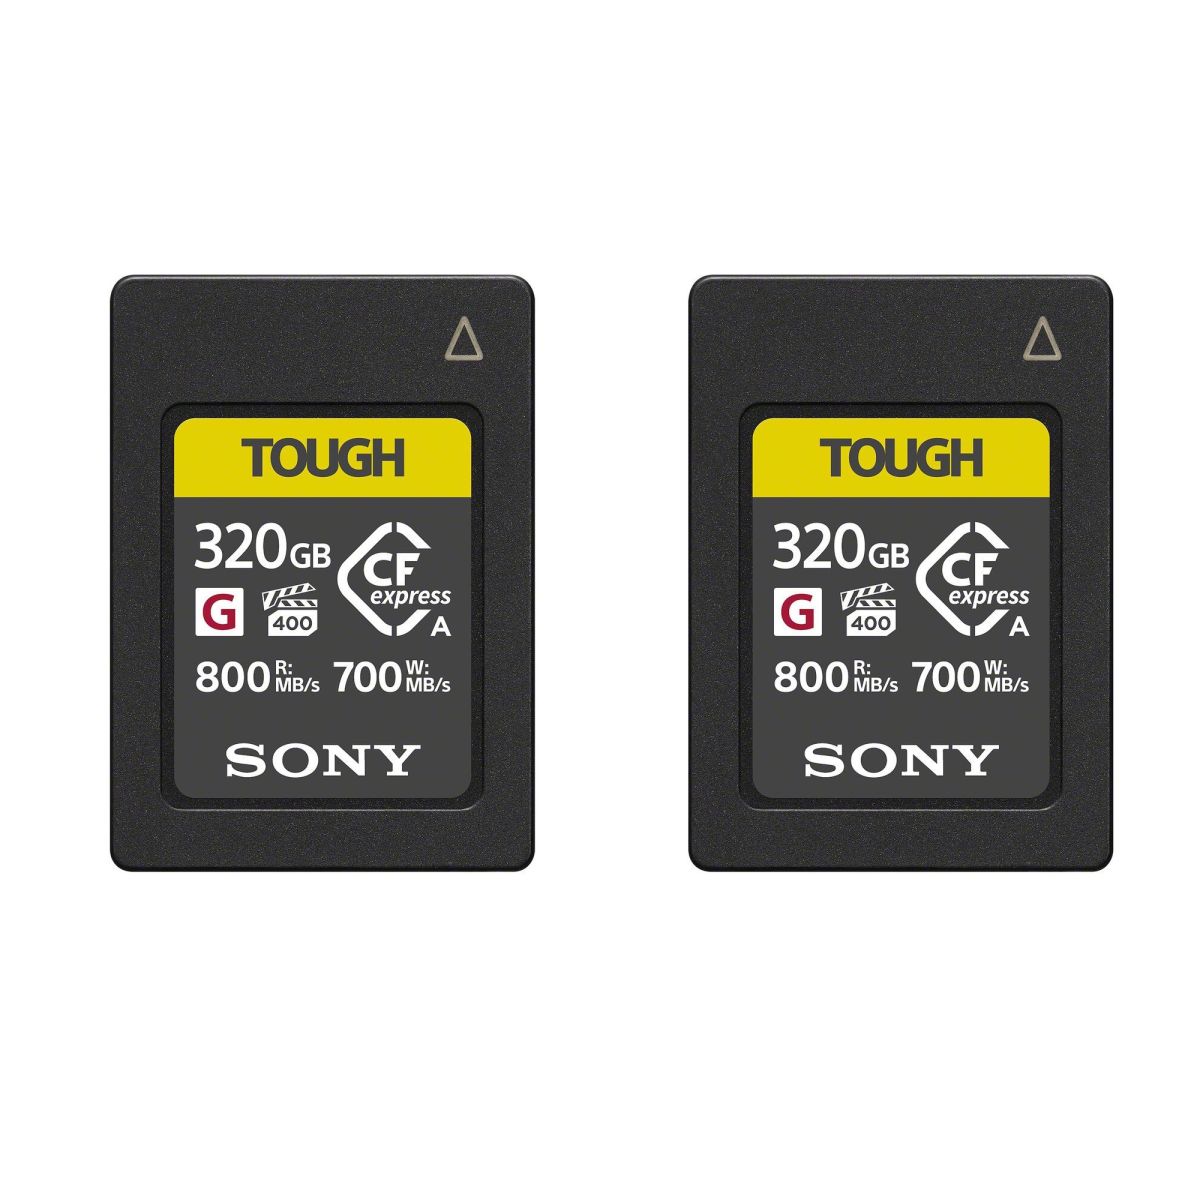 Sony DEUX Cartes Mémoire 320GB CFexpress Type A TOUGH